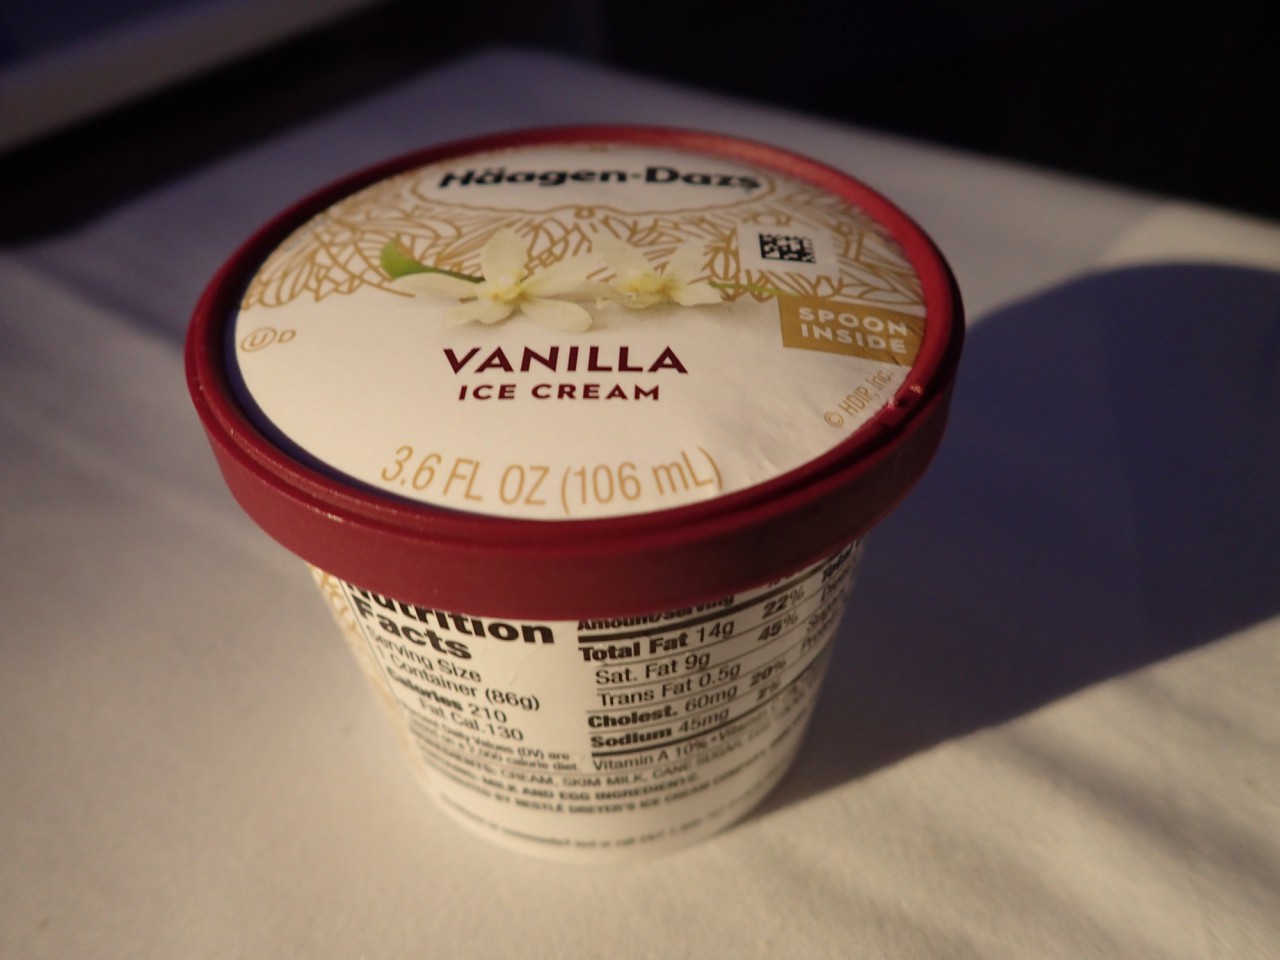 Finnair Business Class Dessert: Haagen-Dazs Vanilla Ice Cream